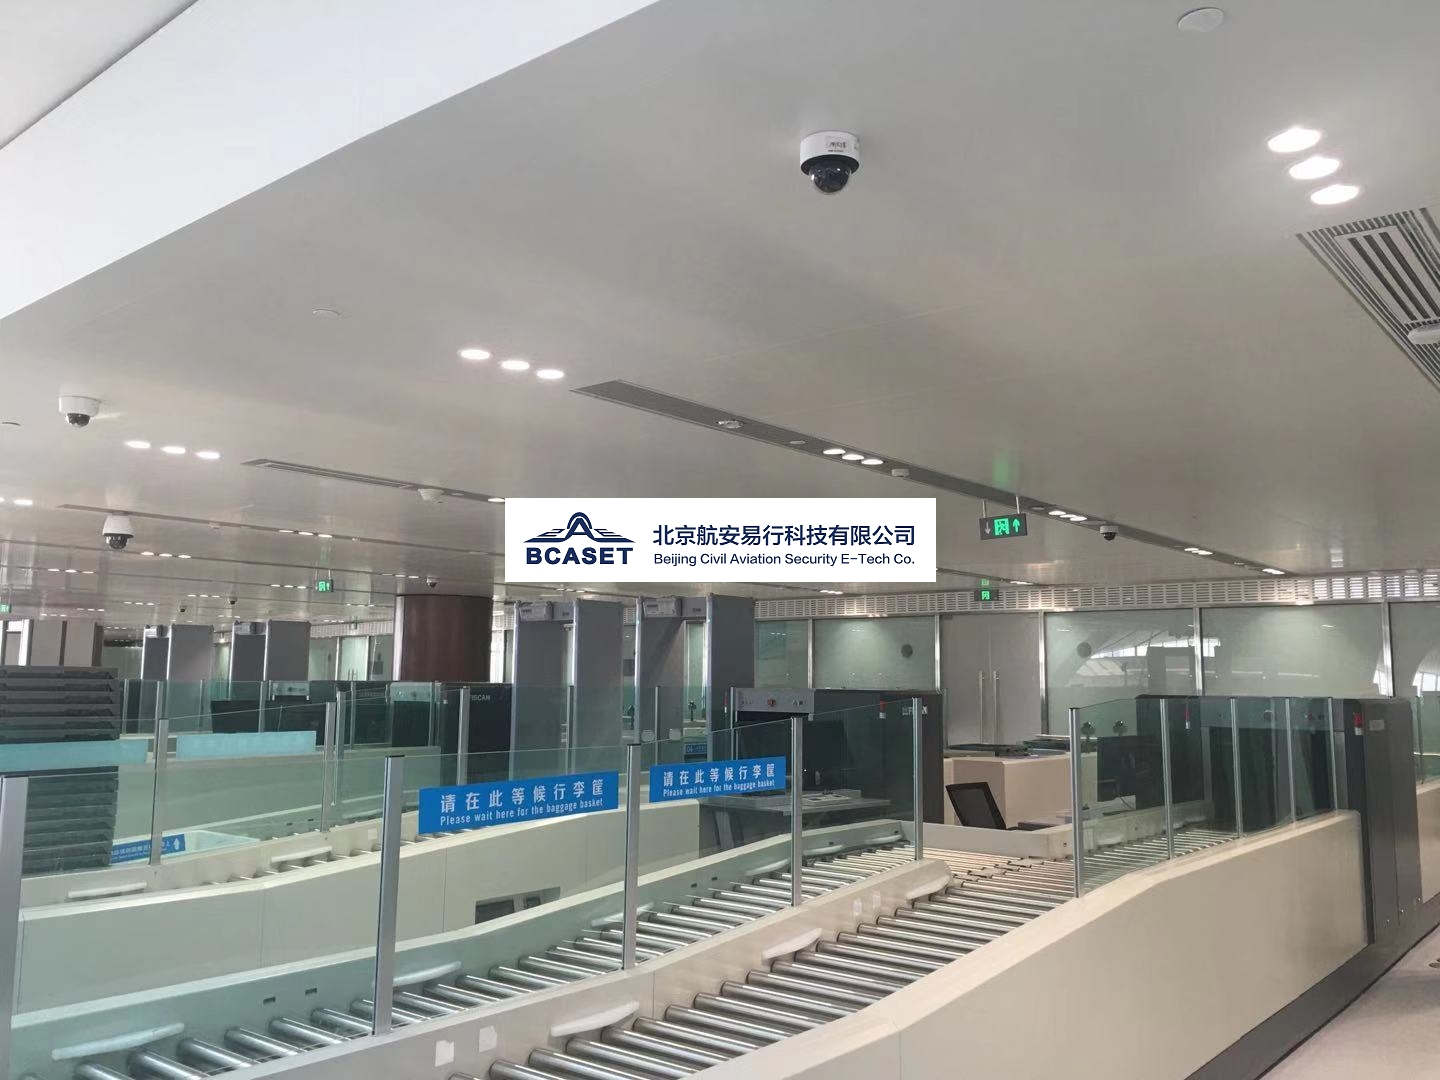 杭州机场开通“医护人员”专用通道-杭州新闻中心-杭州网